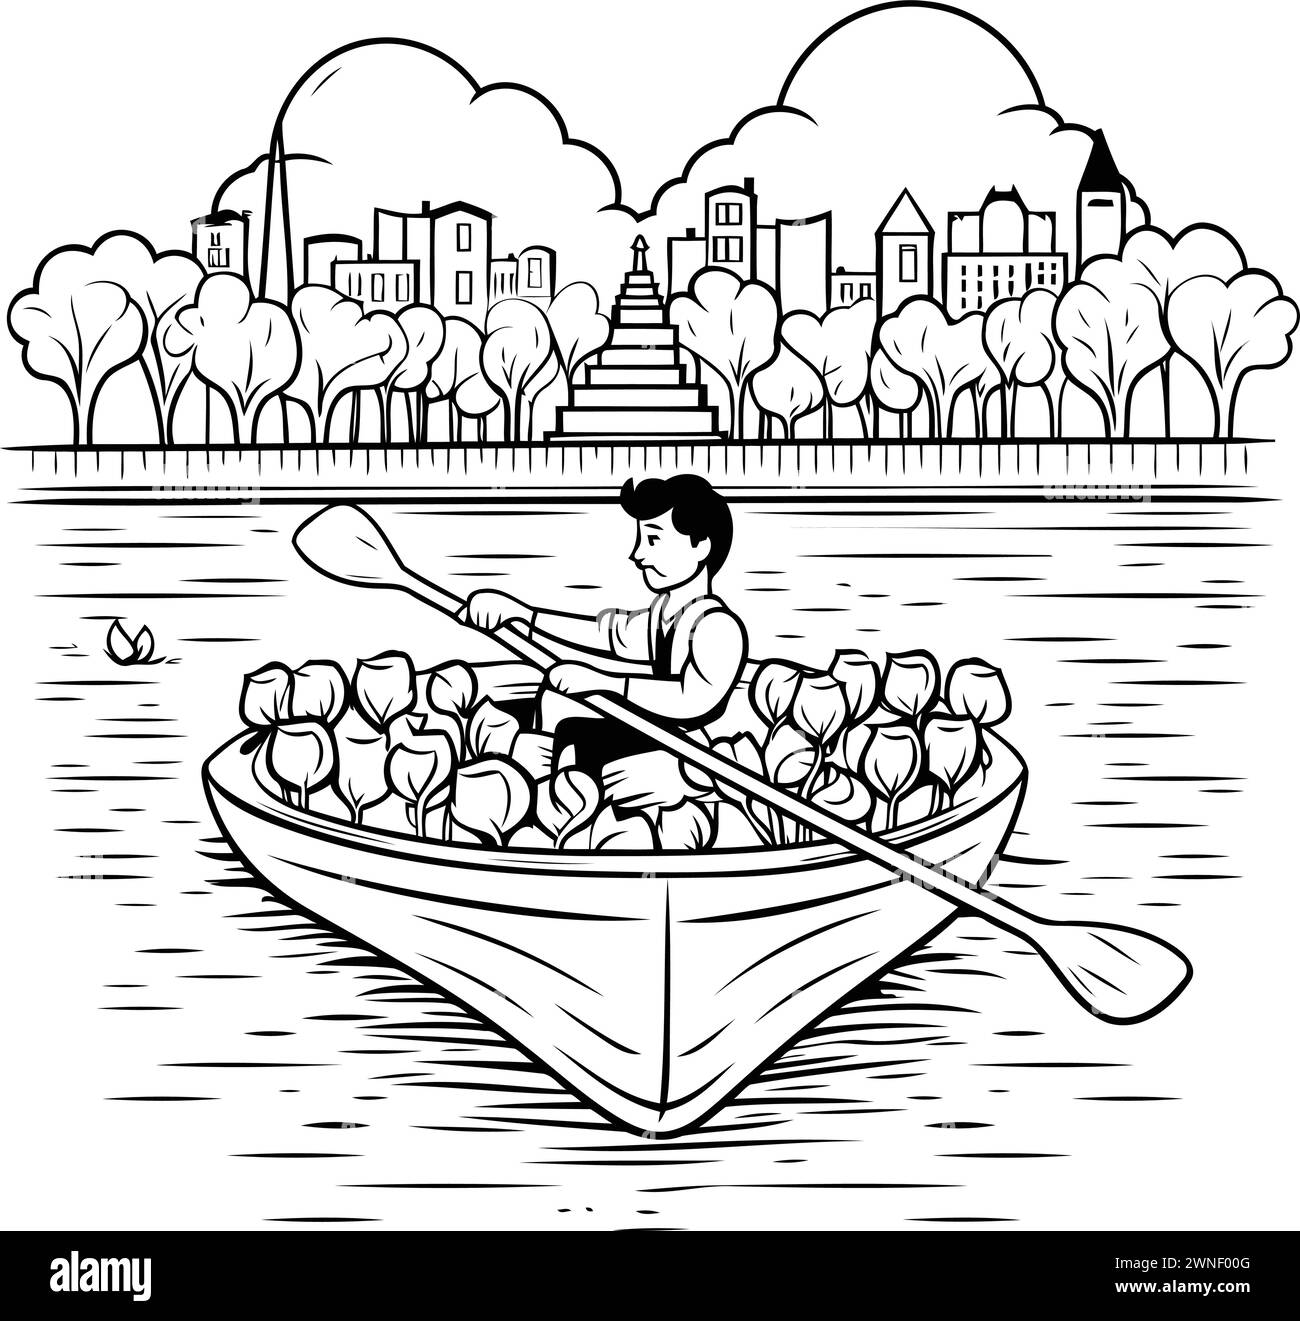 Mann rudert ein Boot mit Lotusblumen im Park Vektor-Illustration grafisches Design Stock Vektor